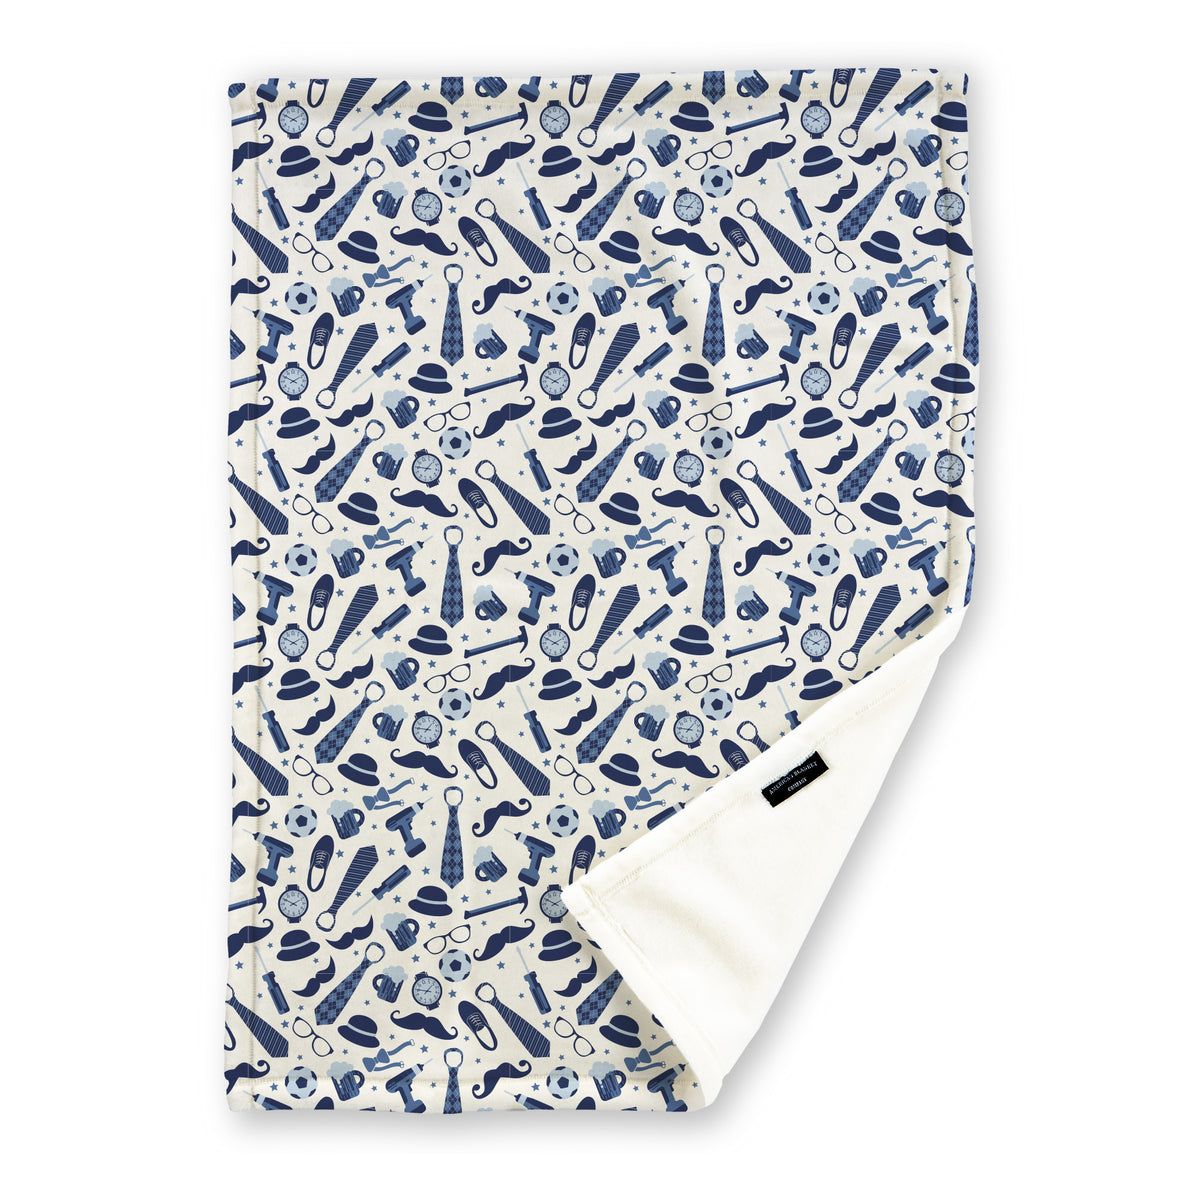 blue dad print blanket printed blanket - Luster Loft Fleece Blanket - Printed Blanket - American Blanket Company